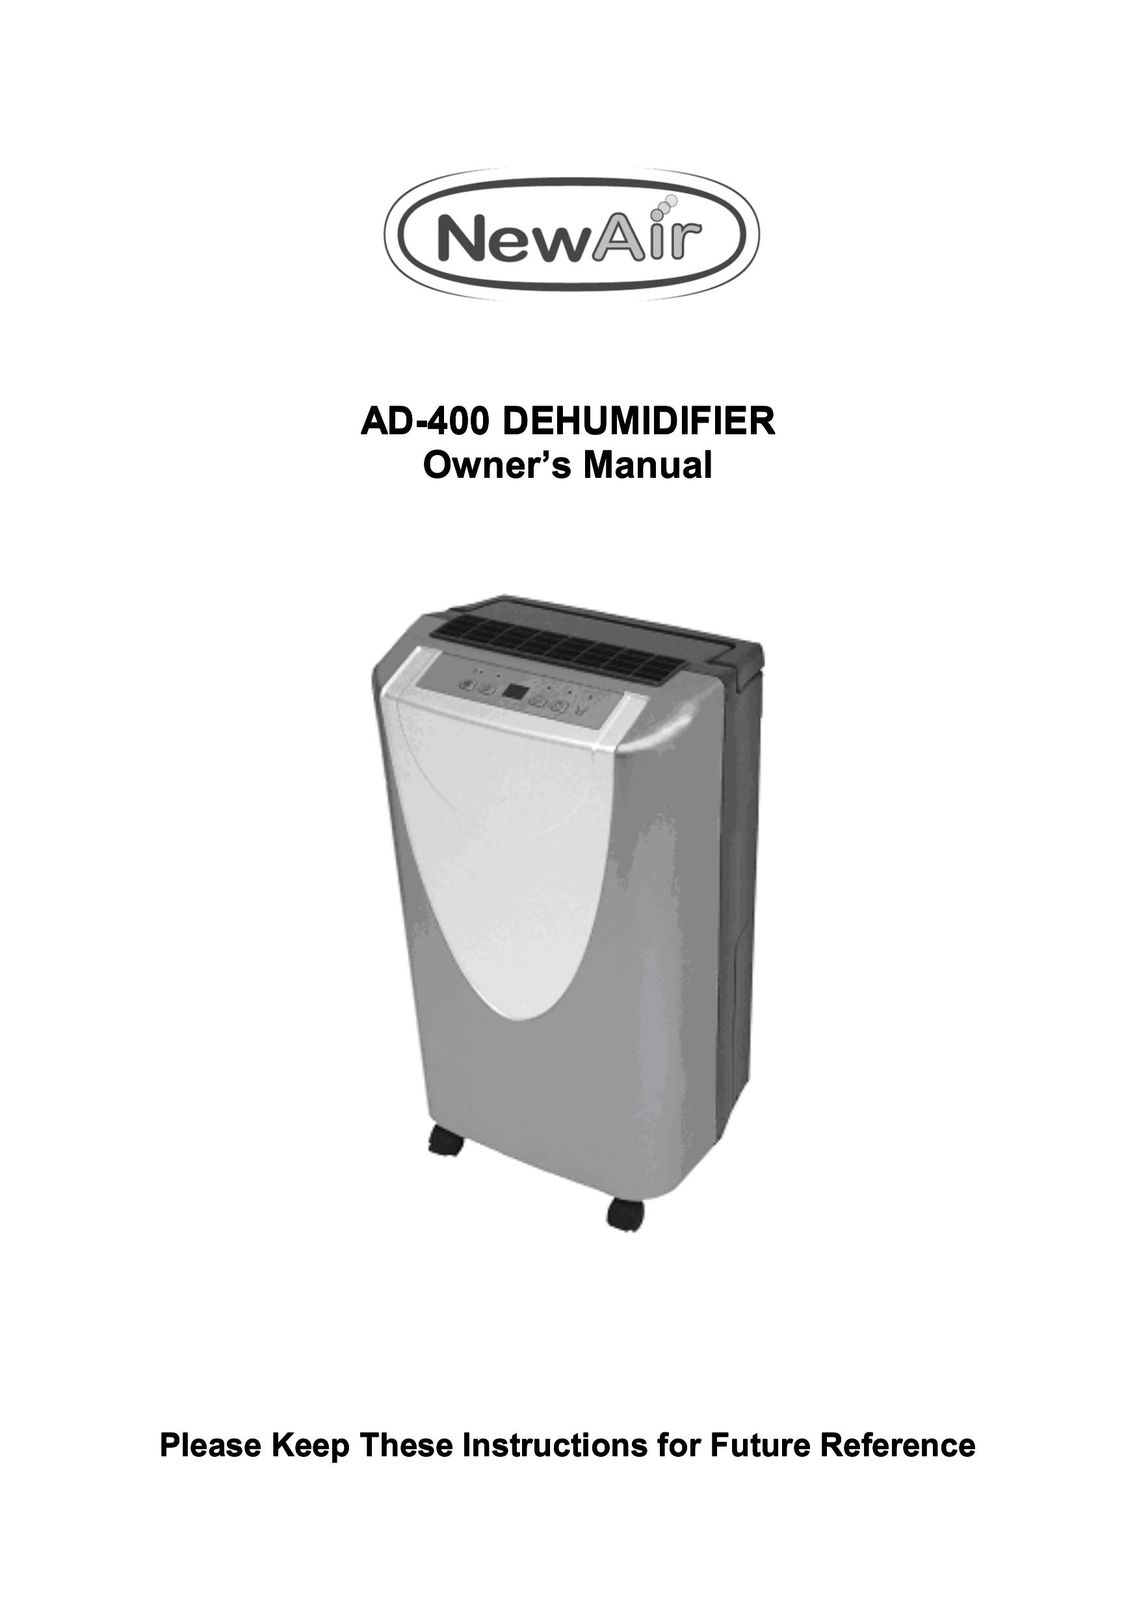 NewAir AD-400 Dehumidifier User Manual